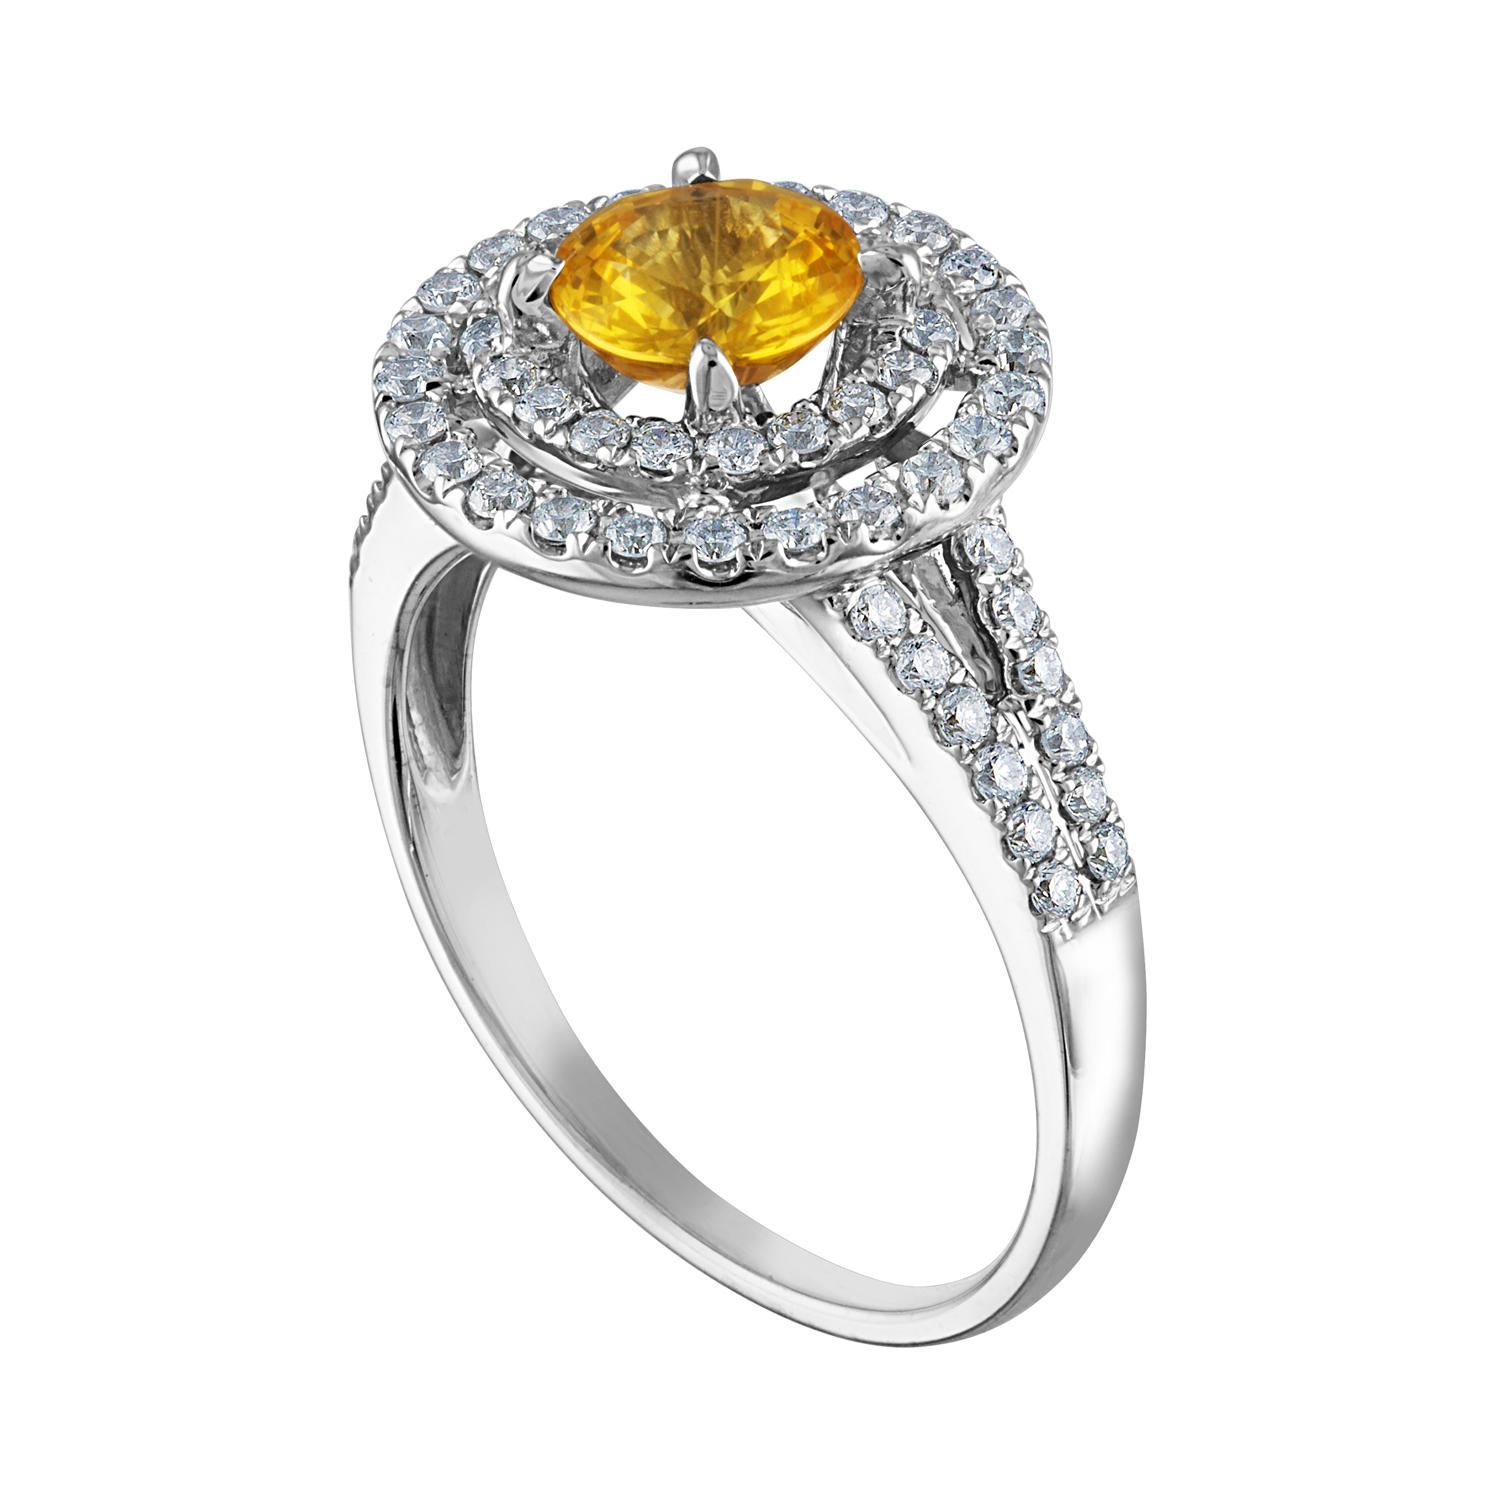 Schöner Double Halo Ring
Der Ring ist 14K Weißgold
Der Mittelstein ist ein runder gelber Saphir 0.98 Karat
Der Sapphire ist AGL-zertifiziert beheizt
Es sind 0.70 Karat in Diamanten F/G VS/SI
Der Ring ist eine Größe 6,5, sizable.
Der Ring wiegt 4.0